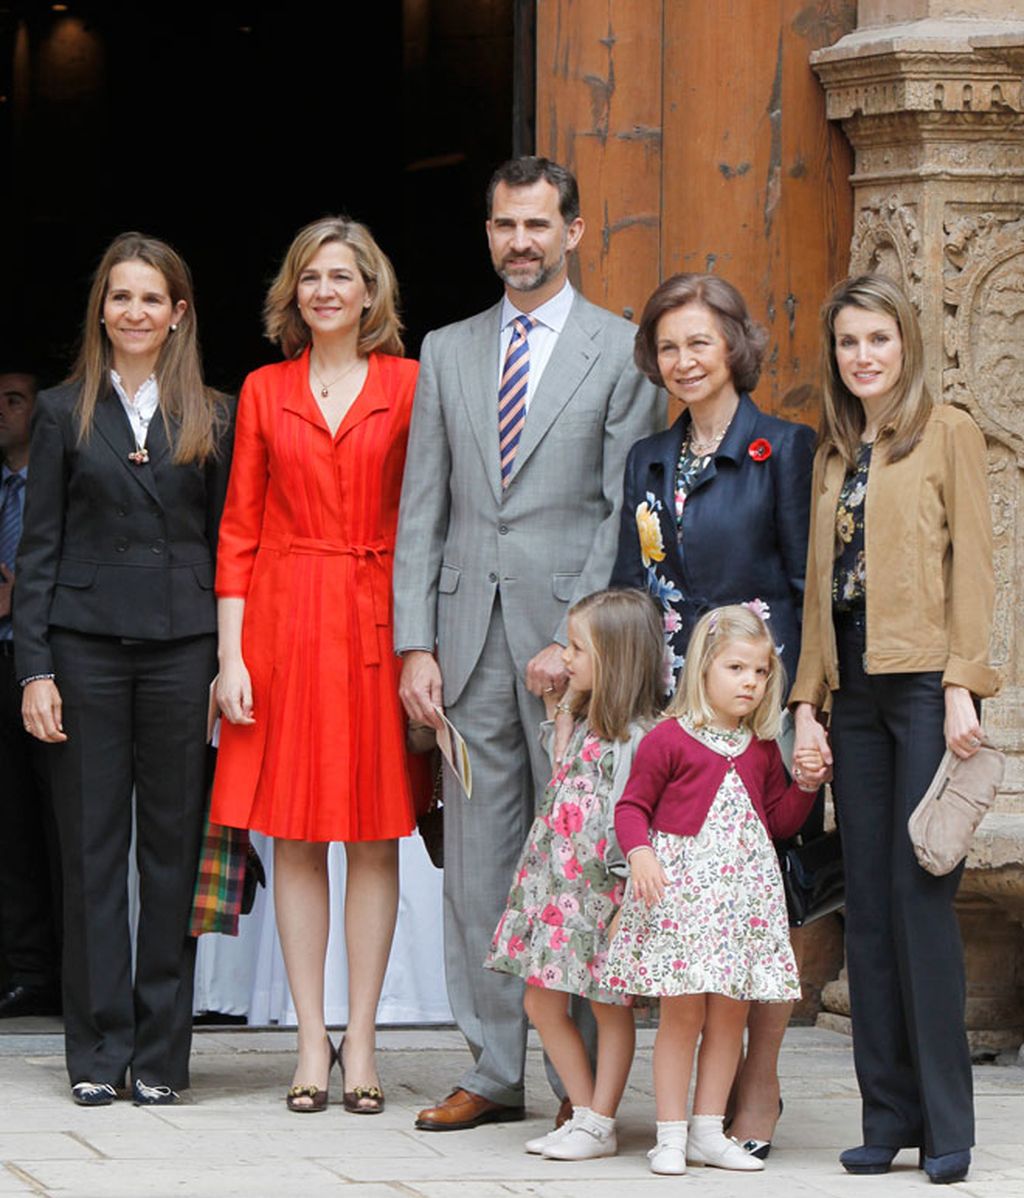 El Príncipe acude rodeado de las mujeres reales a la misa de Pascua